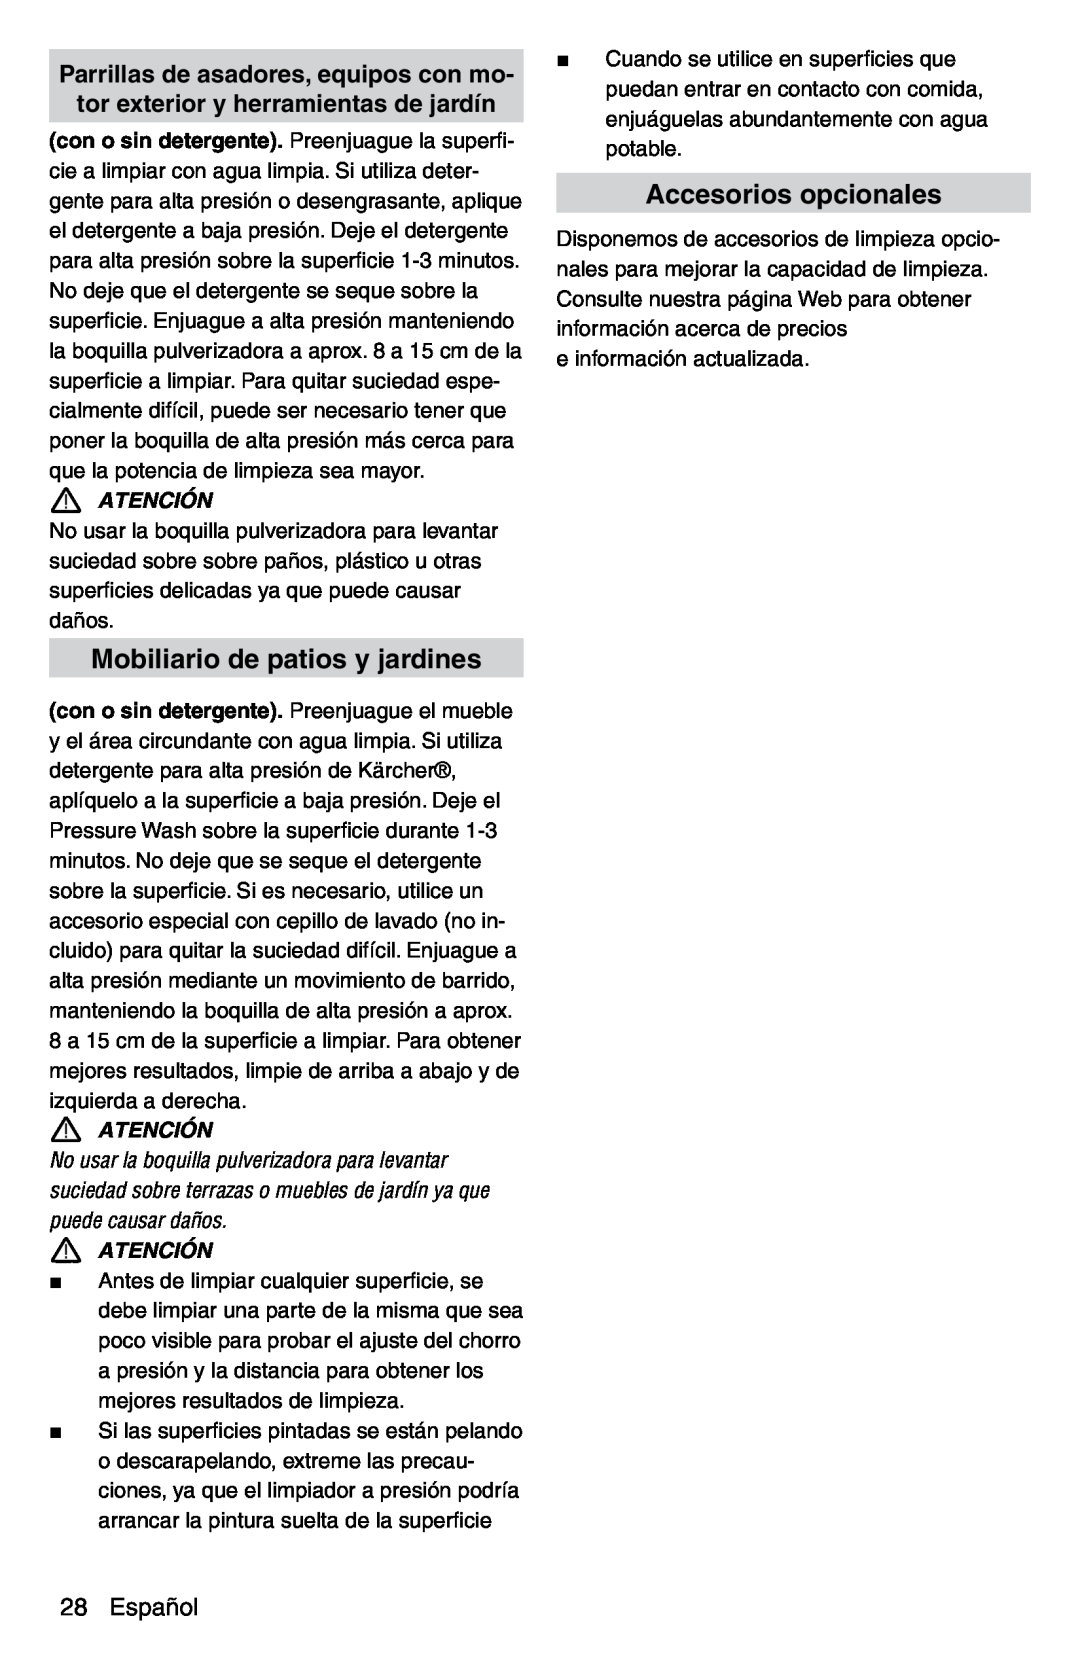 Karcher G 2600 PC manual Mobiliario de patios y jardines, Accesorios opcionales, Español, Atención 